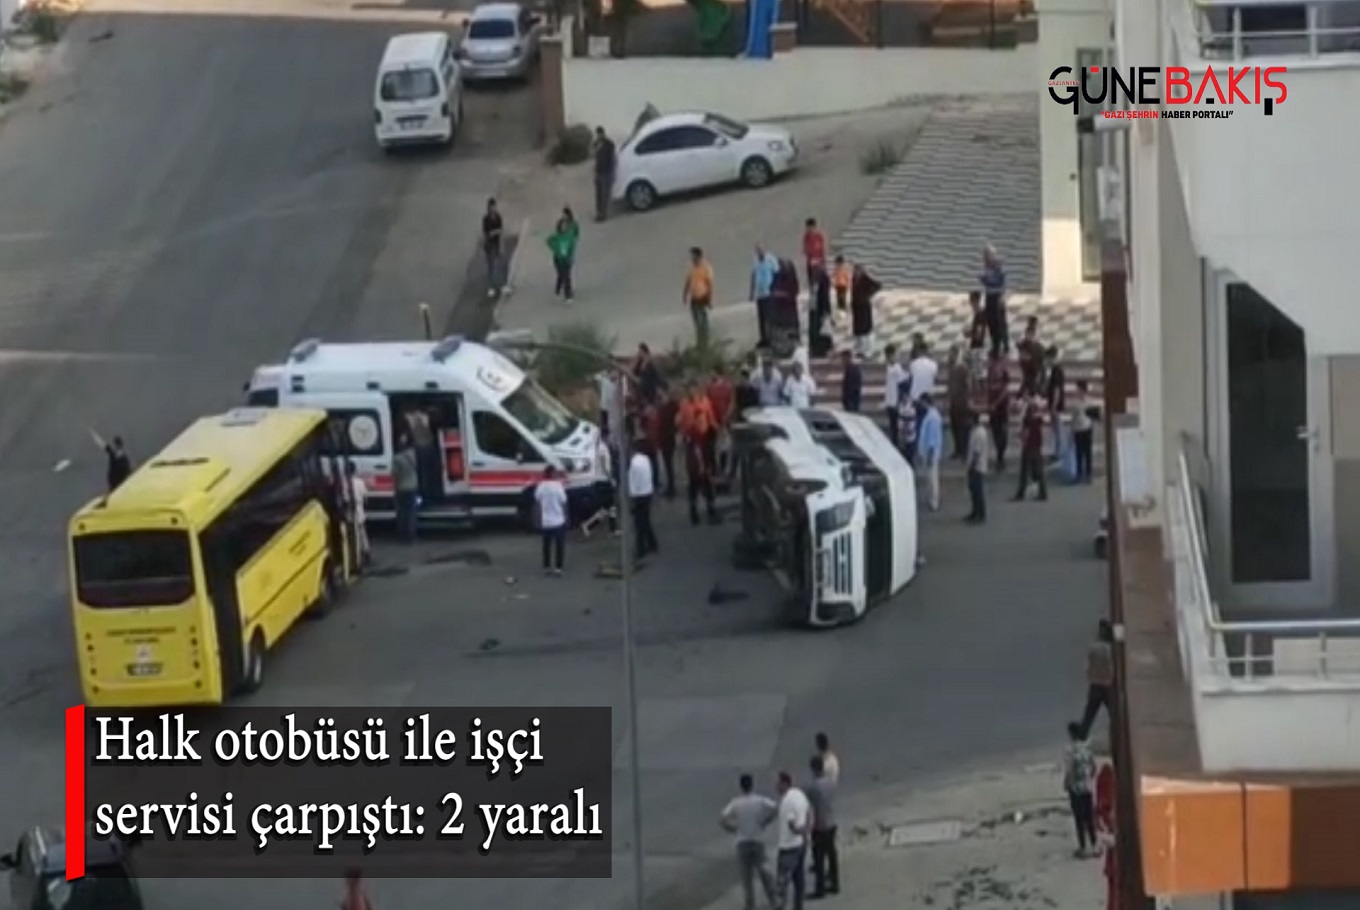 Halk otobüsü ile işçi servisi çarpıştı: 2 yaralı 